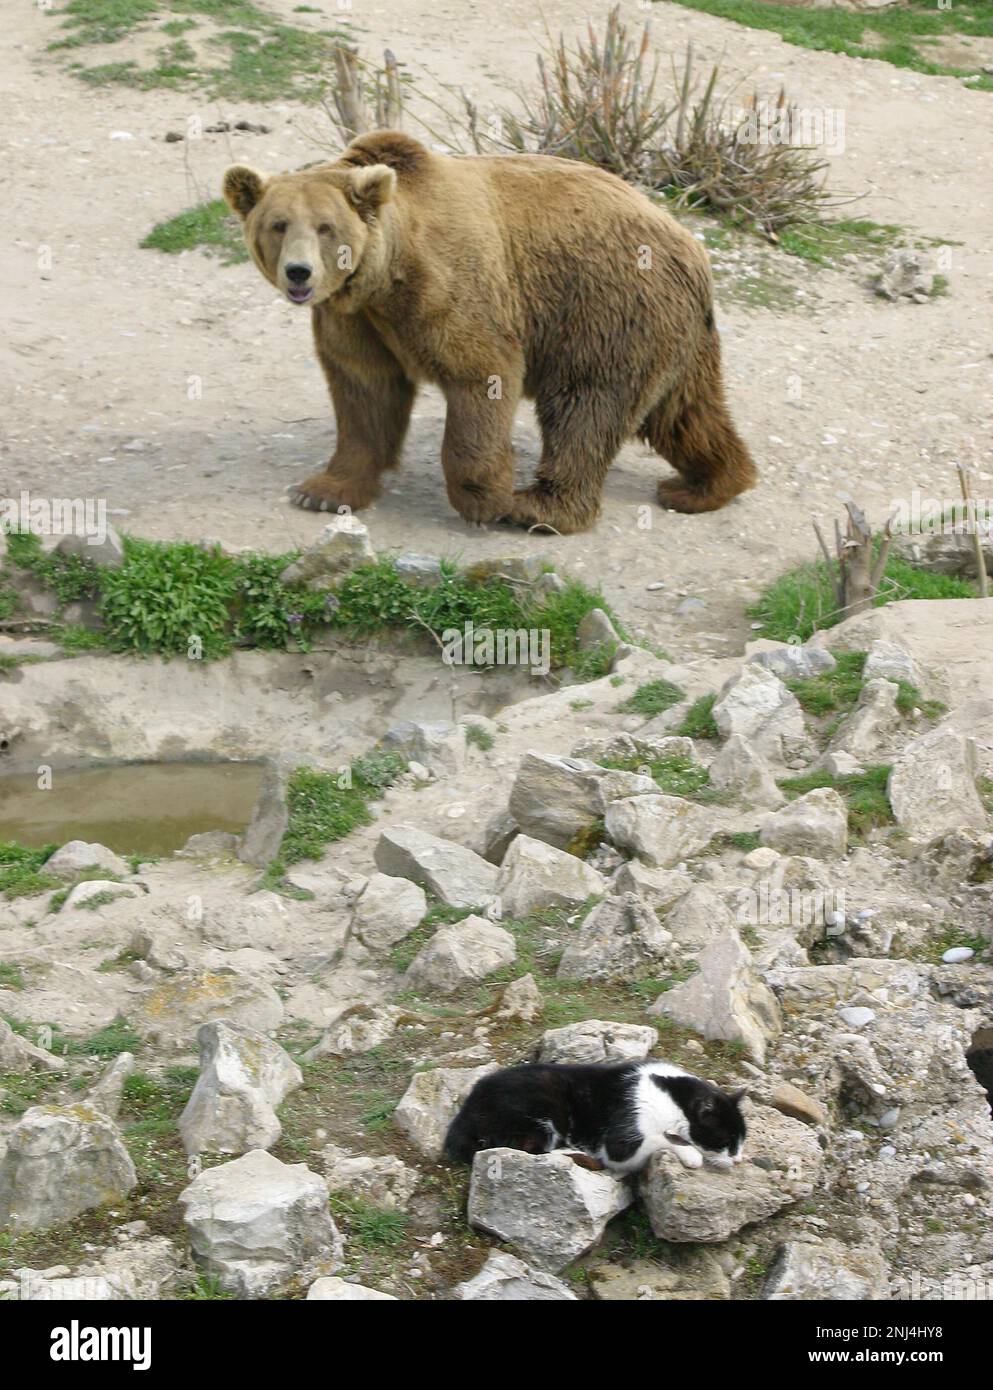 Gatto nel recinto dell'orso Zoo di Skopje. Marzo 2004. Queste fotografie hanno portato ad una serie di articoli di stampa . Nel corso degli anni lo zoo ha ricevuto molte critiche per le condizioni di vita dei suoi animali. Nel 2008 la città ha stanziato 42 milioni di denari in fondi per migliorare lo zoo, e lo zoo ha iniziato a lavorare con l'Associazione europea degli zoo e Aquaria (EAZA) per portare lo zoo agli standard moderni. Nel 2010 erano state costruite nuove recinzioni, il 85% delle mostre più antiche dello zoo era stato rinnovato, lo zoo divenne un candidato all'adesione all'EAZA. Immagine garyroberts/worldwidefeatures.com Foto Stock